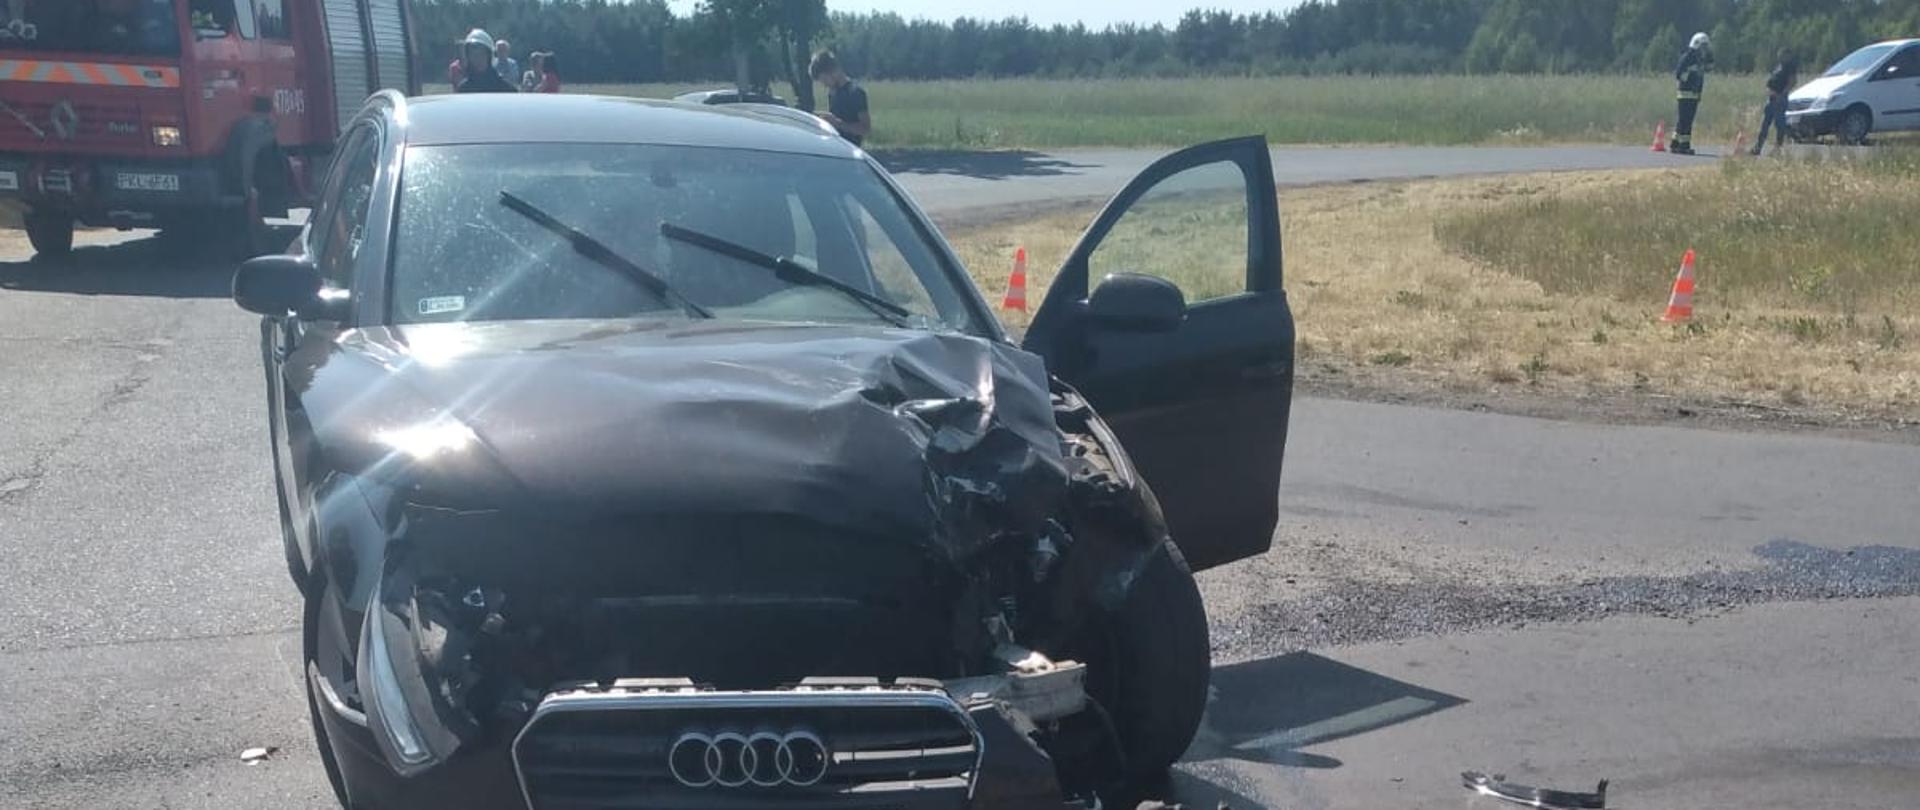 Zdjęcie przedstawia pojazd po wypadku drogowym